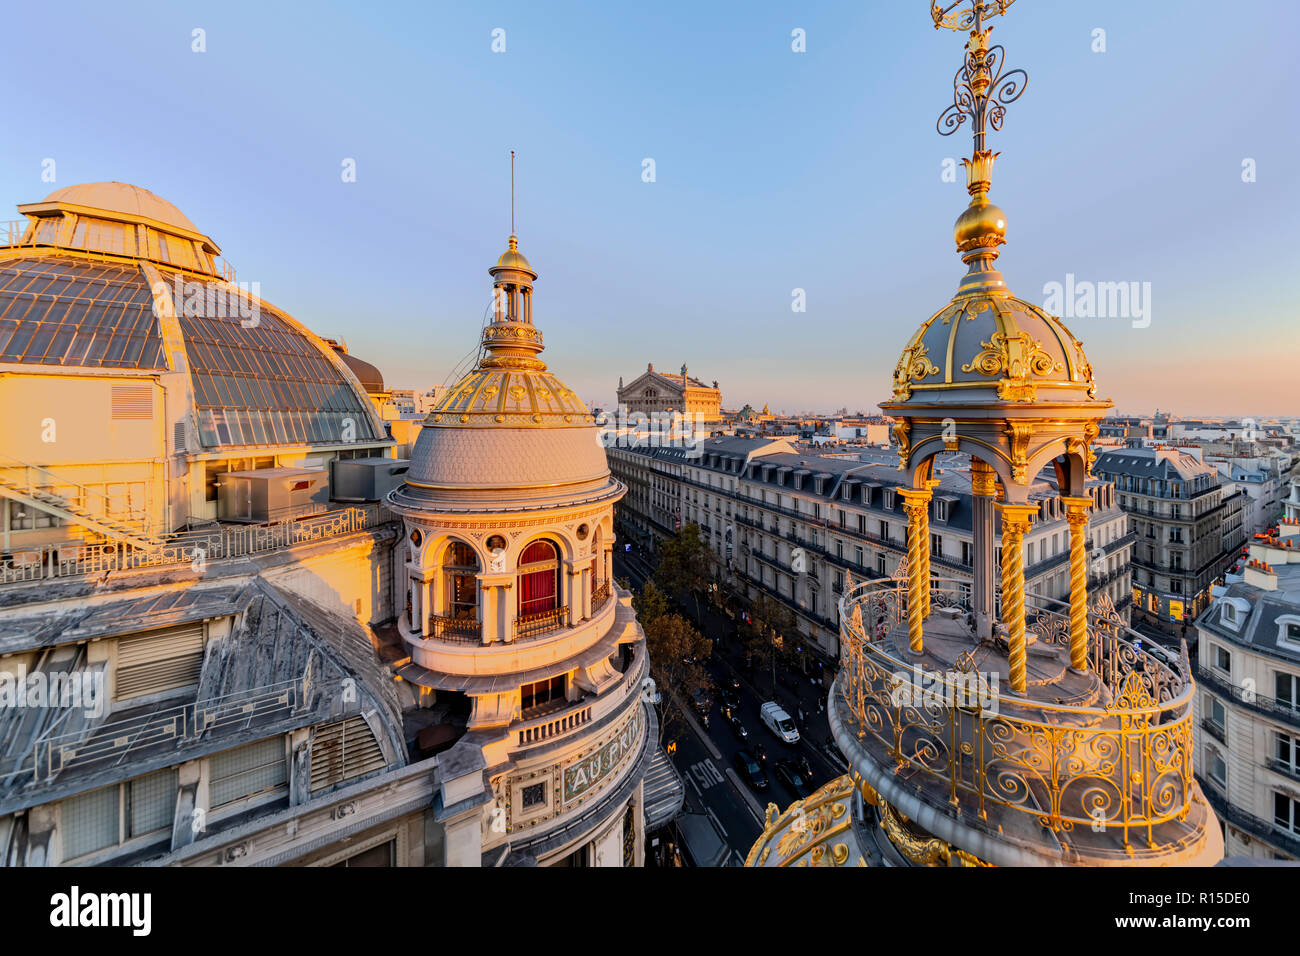 PARIS, 25 octobre 2018 - Coucher de soleil sur le toits de Paris et l'Opéra de Paris Garnier bâtiment dans le quartier Haussmann, France Banque D'Images